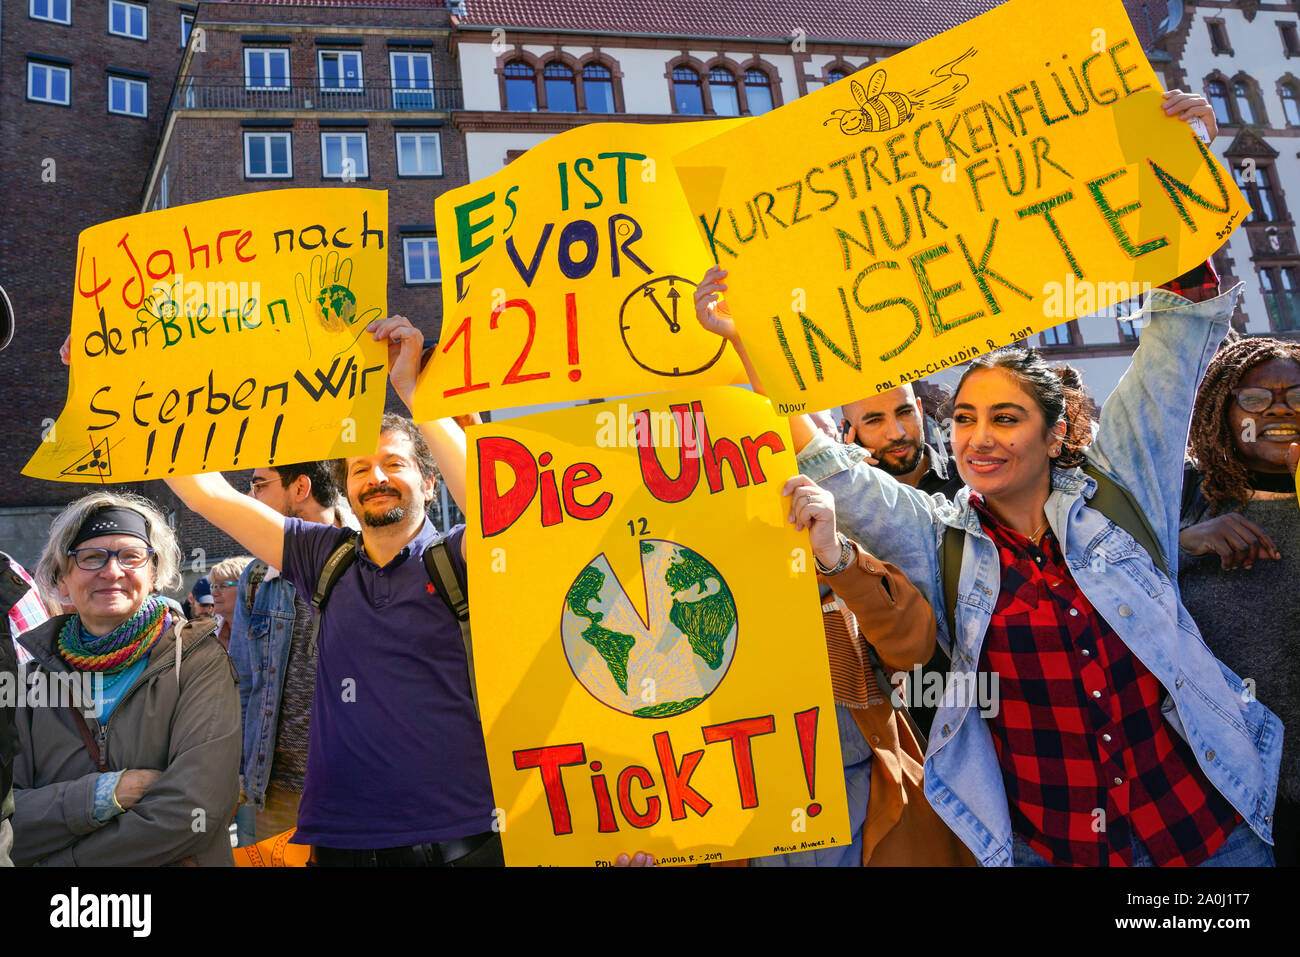 Dortmund/Deutschland, 20. Sept. 2019: Teilnehmer mit ihren Plakaten an den Freitagen für zukünftige Demonstration auf dem globalen Klimawandel Tag in Dortmund------- Dortmund, 20.09.2019: Teilnehmer mit Stand Plakaten bei der Freitags für Future-Demonstration am weltweiten Tag des Klimaschutzes in Dortmund, Deutschland Stockfoto